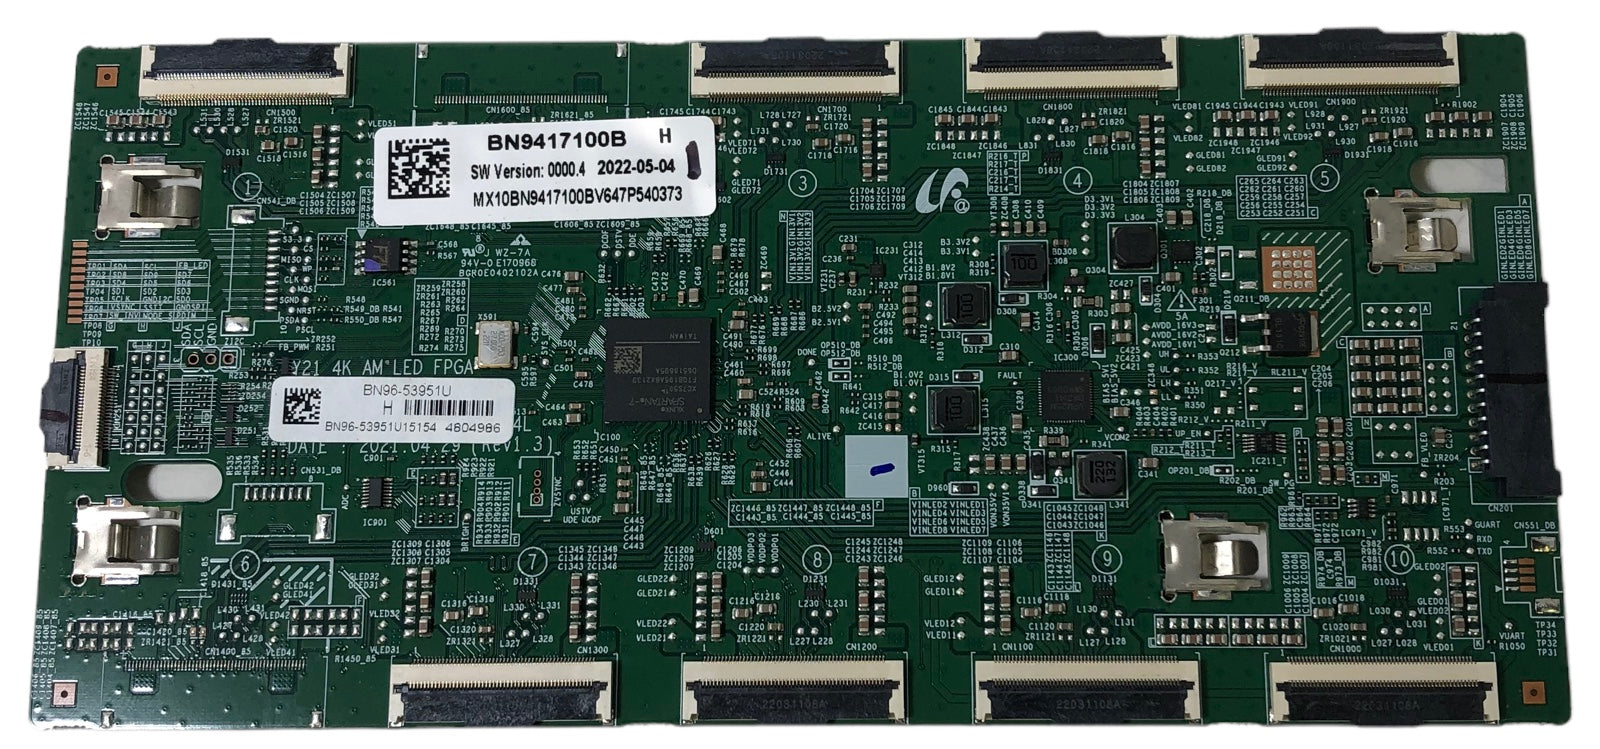 Samsung BN96-53951U Power SUBCON Board